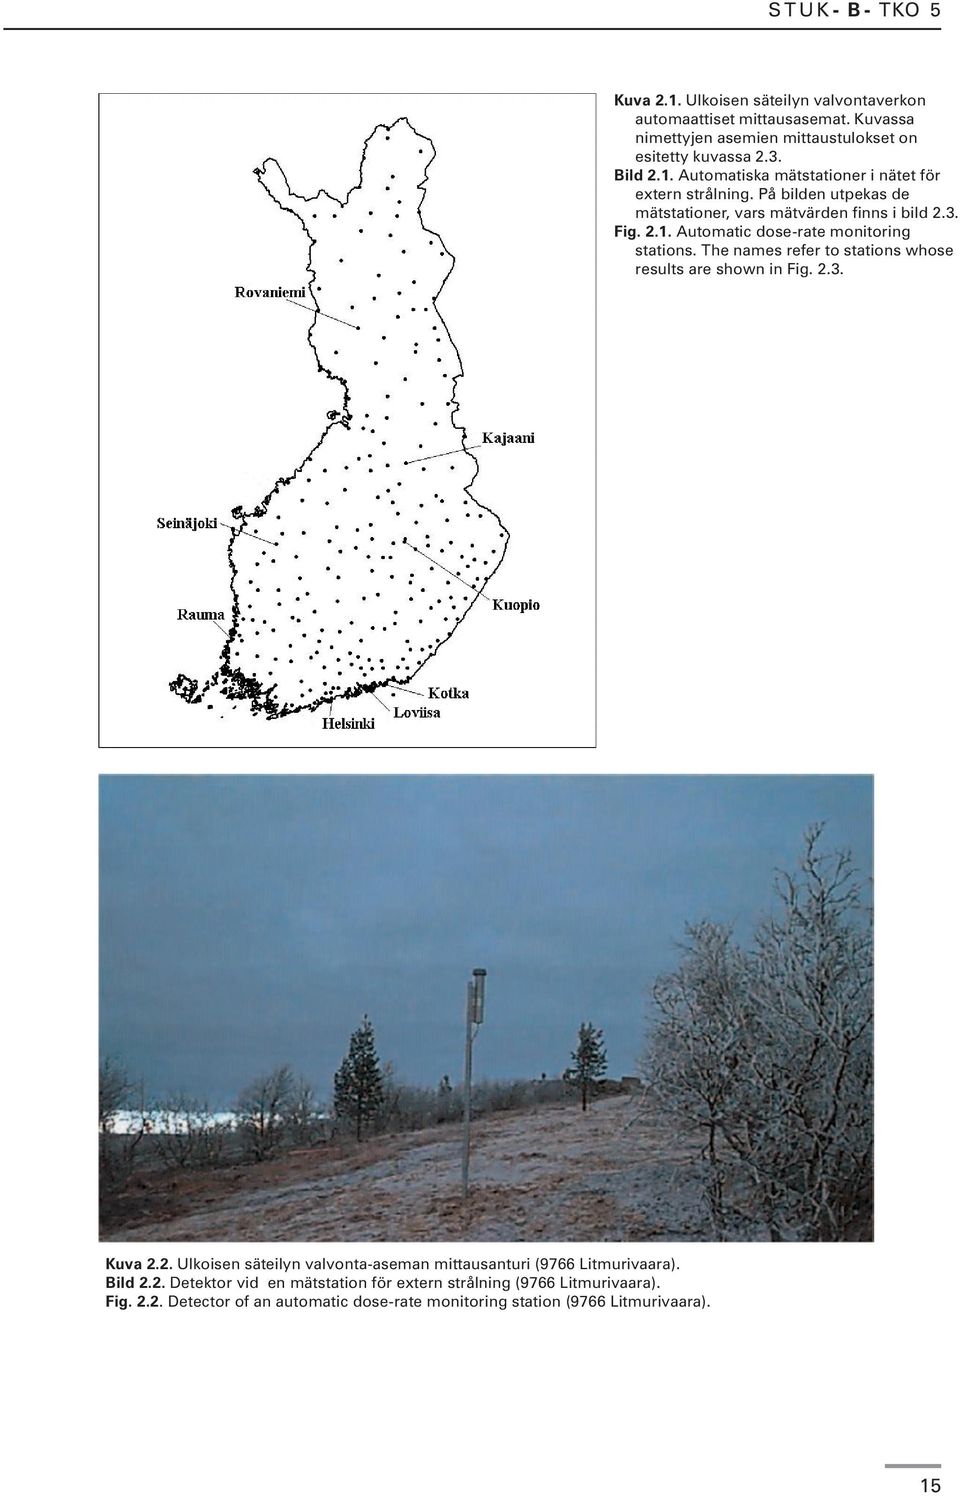 The names refer to stations whose results are shown in Fig. 2.3. Kuva 2.2. Ulkoisen säteilyn valvonta-aseman mittausanturi (9766 Litmurivaara). Bild 2.2. Detektor vid en mätstation för extern strålning (9766 Litmurivaara).